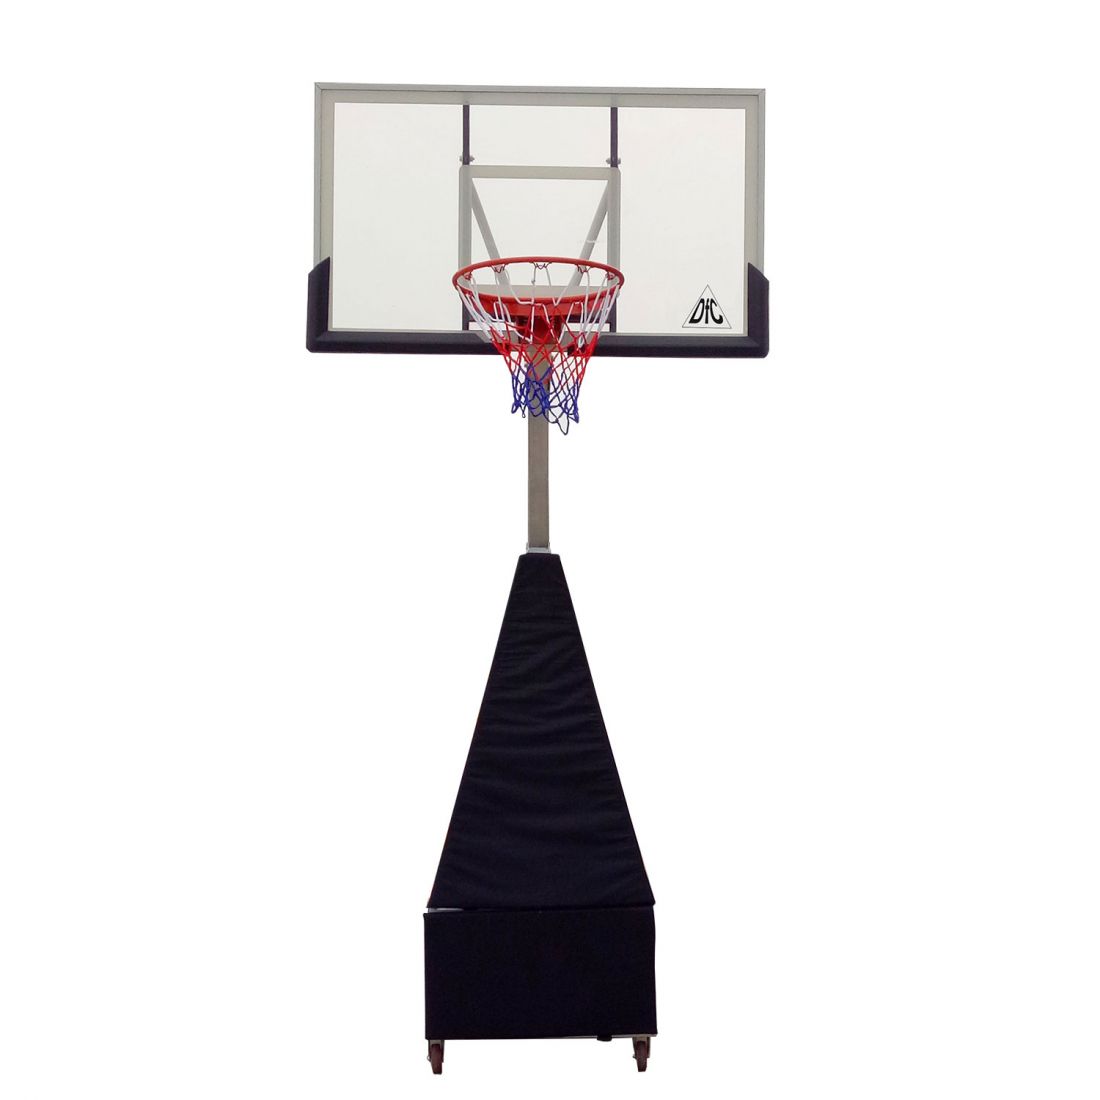 Мобильная баскетбольная стойка DFC STAND60SG